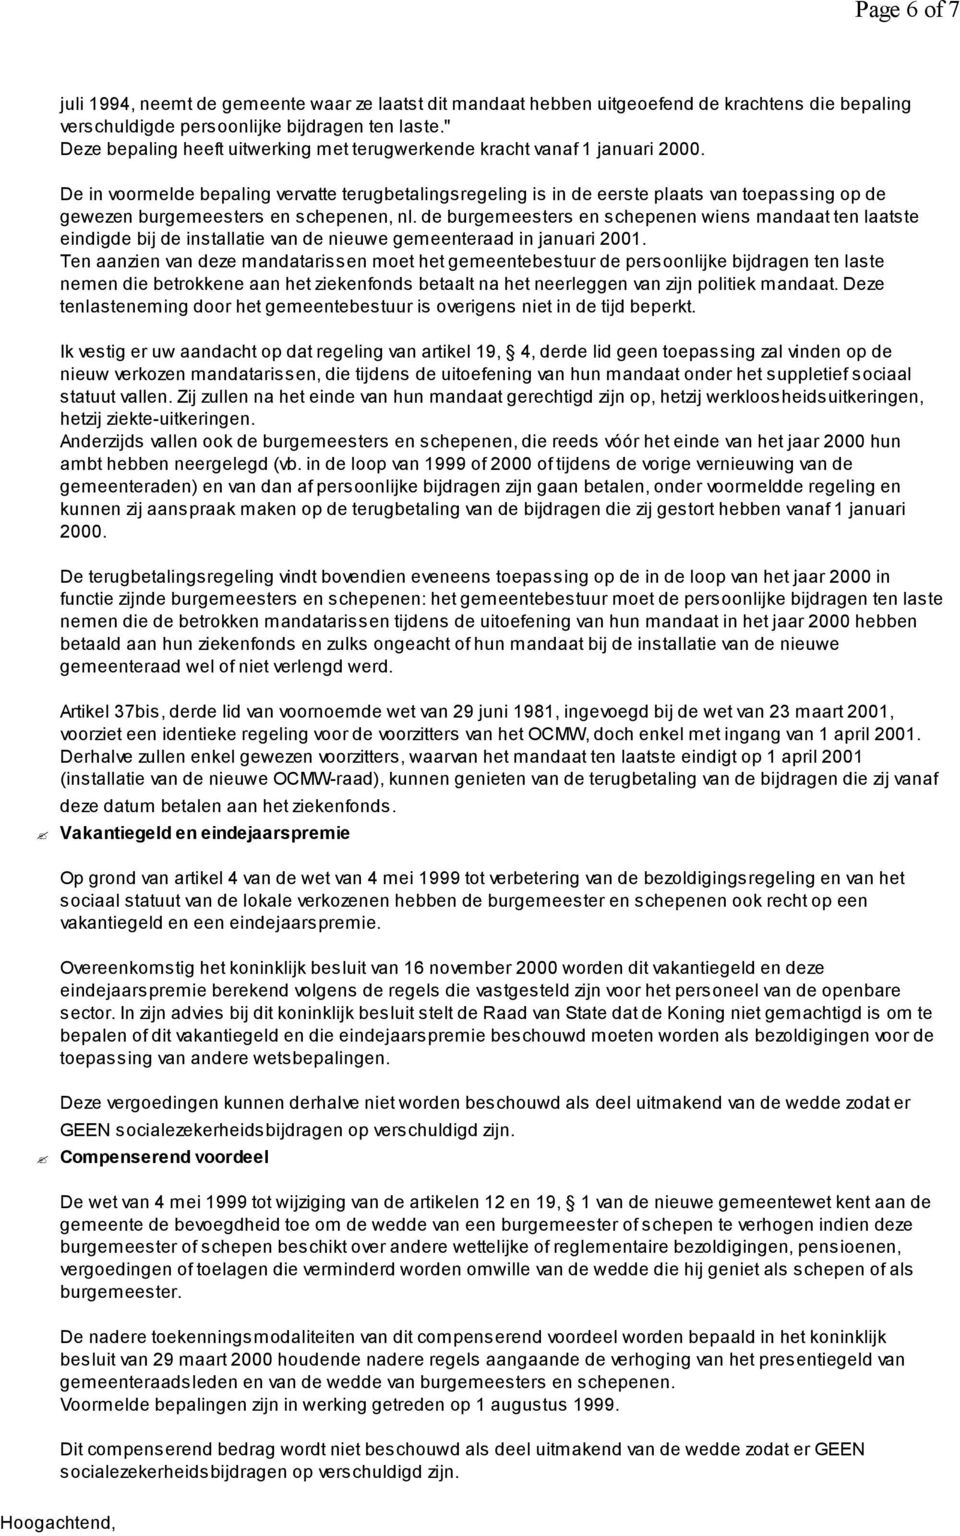 De in voormelde bepaling vervatte terugbetalingsregeling is in de eerste plaats van toepassing op de gewezen burgemeesters en schepenen, nl.